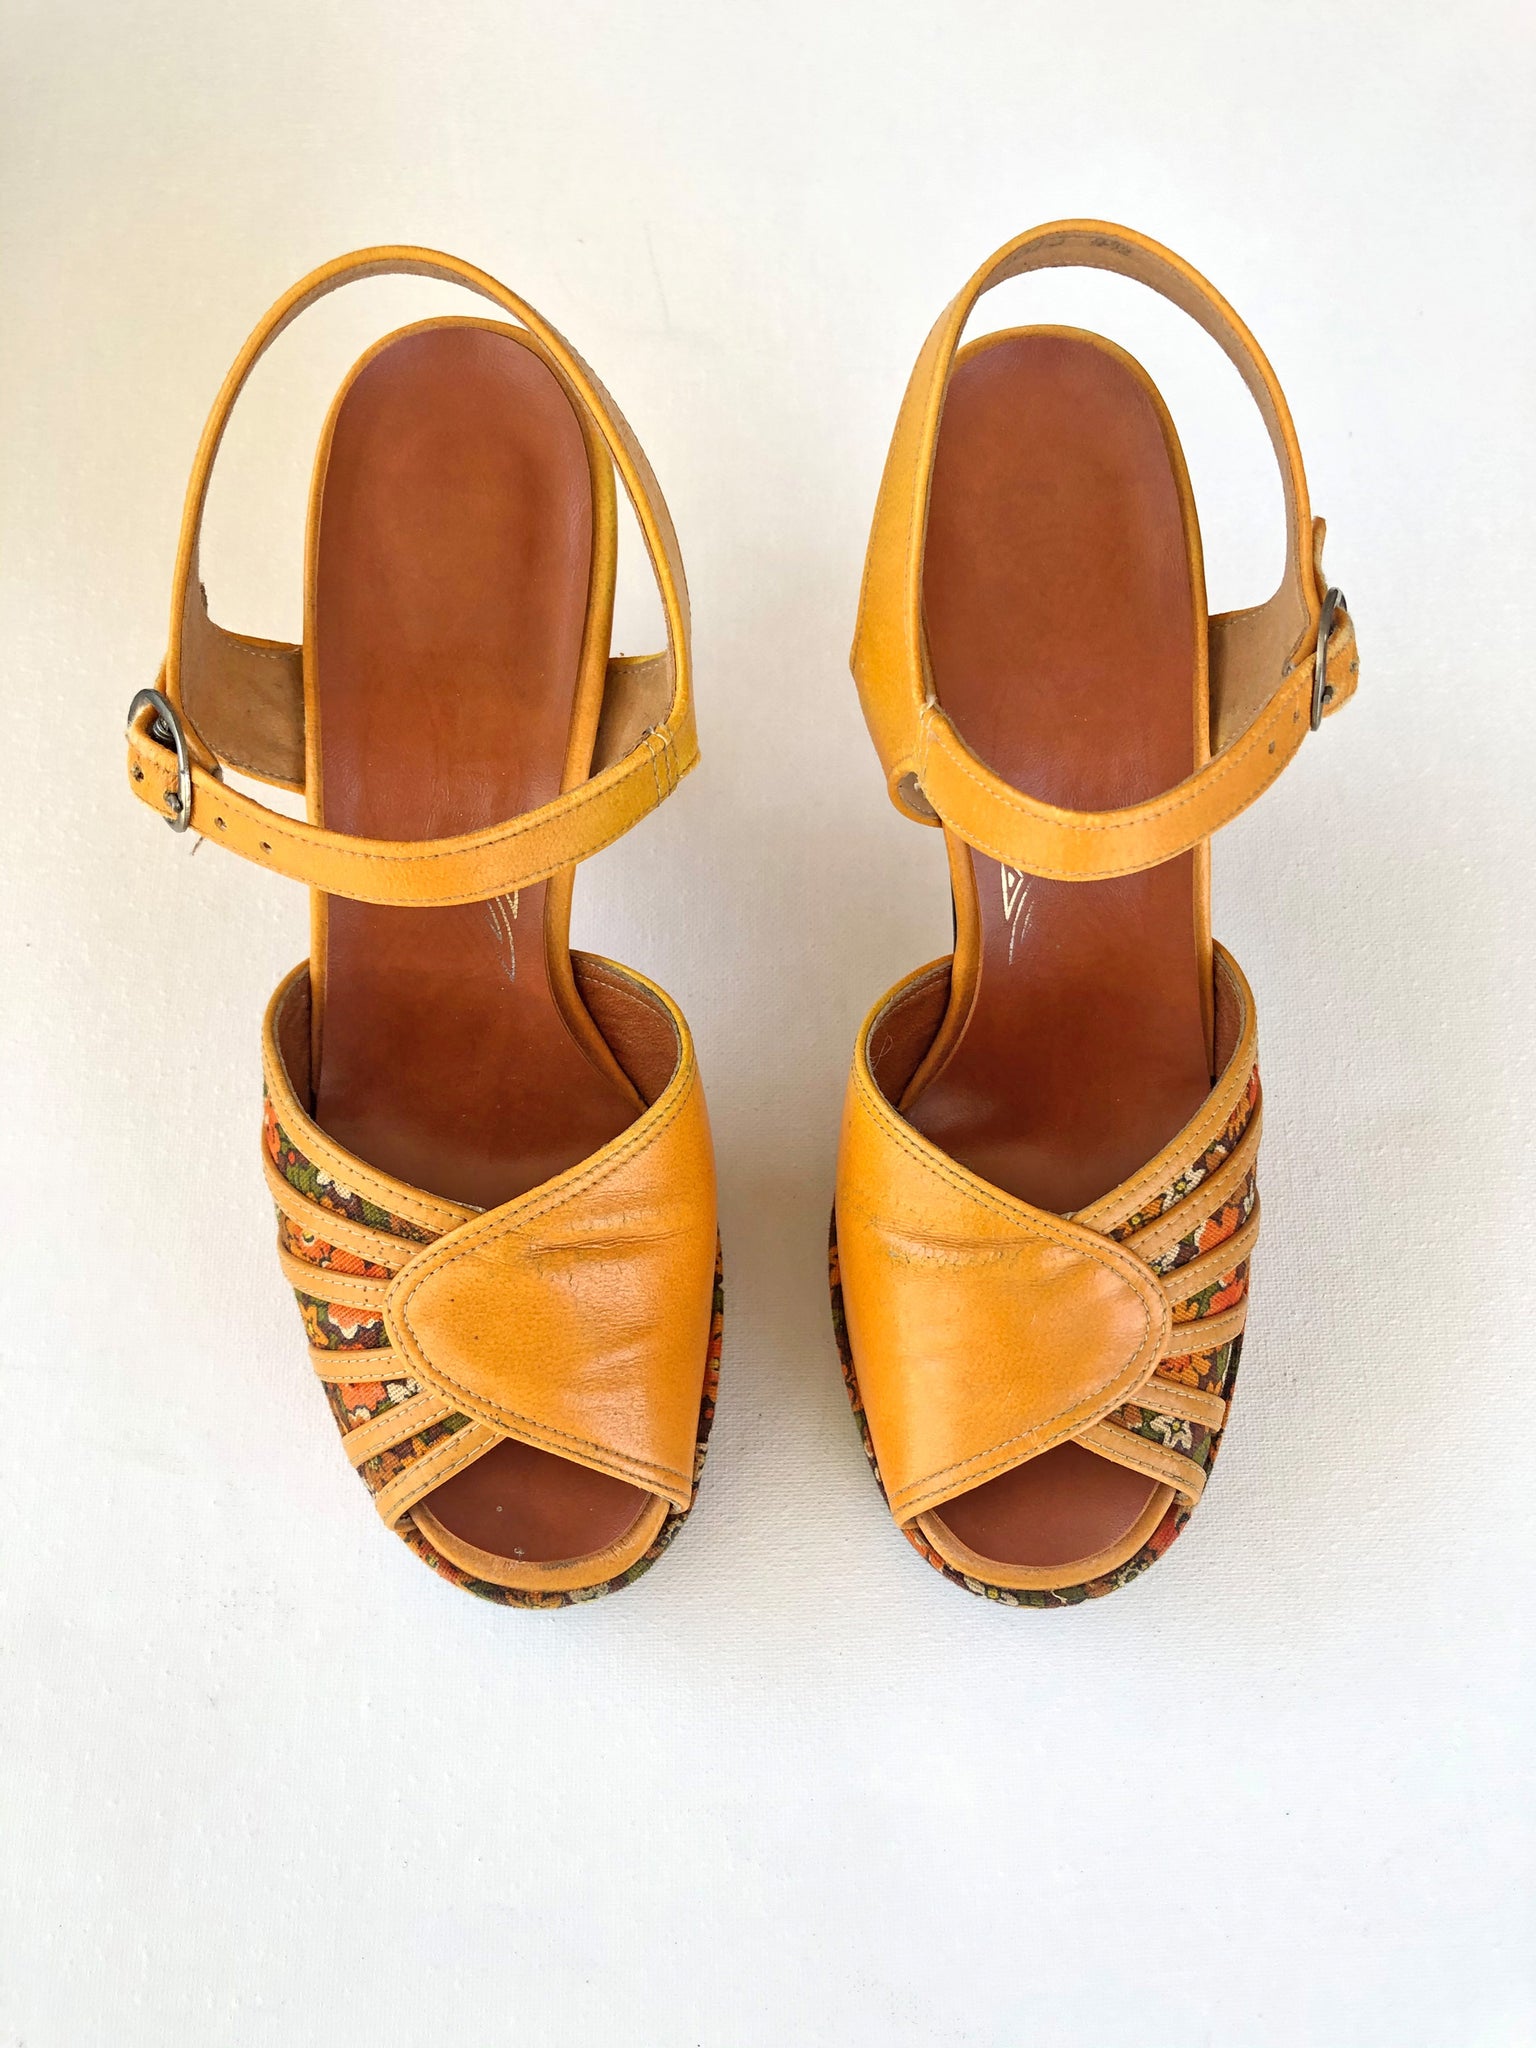 VINTAGE: Leather Platform Sandals - Orange Floral